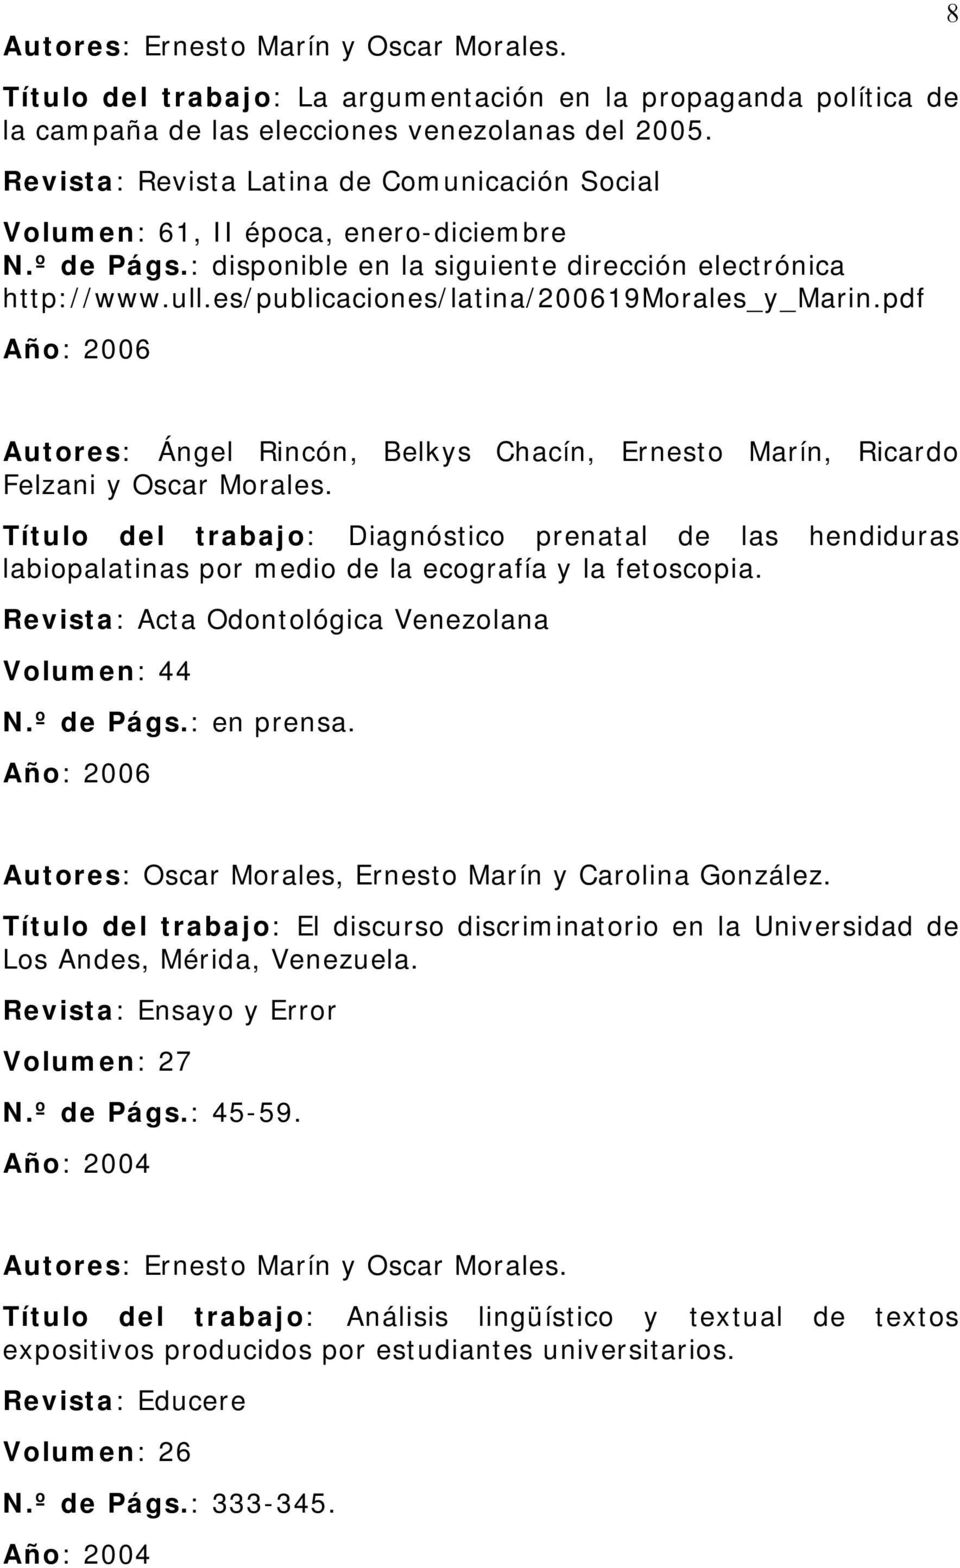 es/publicaciones/latina/200619morales_y_marin.pdf Año: 2006 8 Autores: Ángel Rincón, Belkys Chacín, Ernesto Marín, Ricardo Felzani y Oscar Morales.